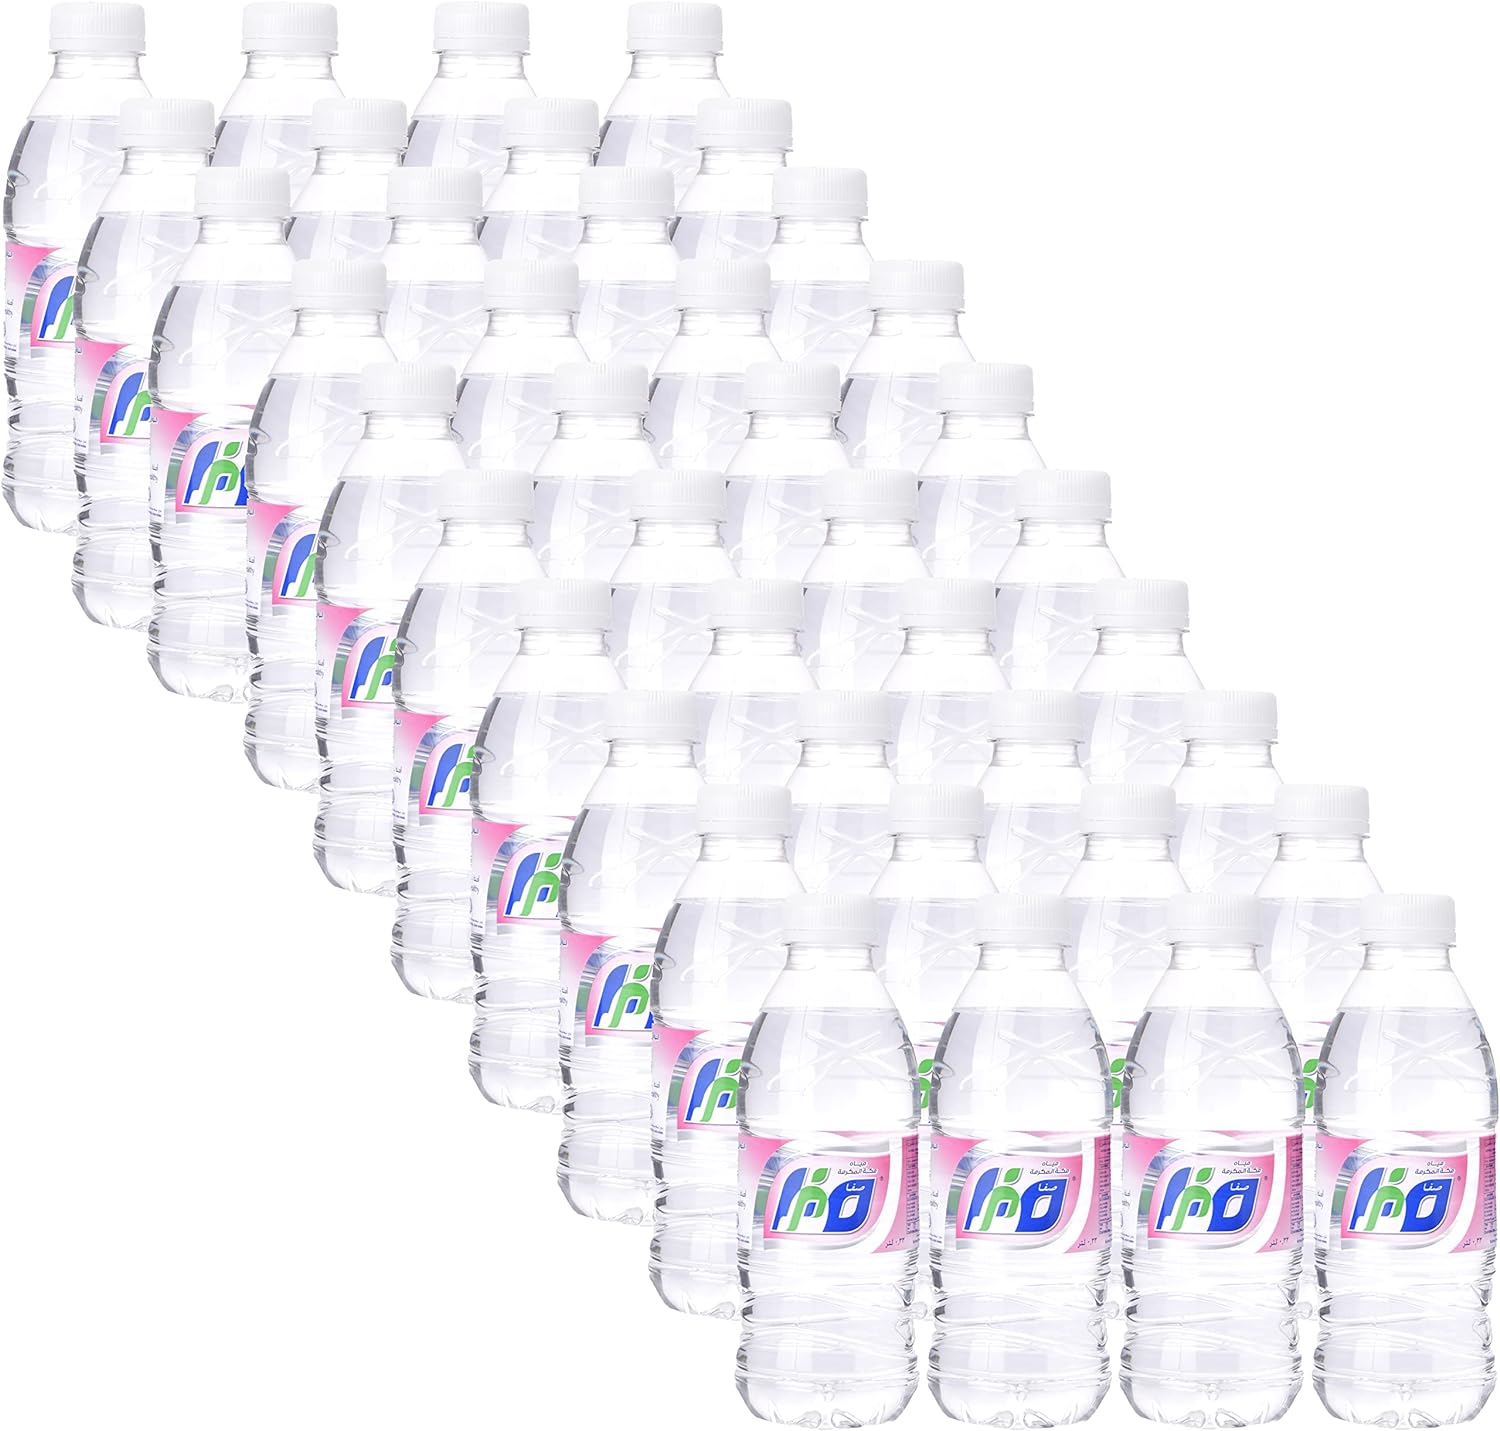 Safa Makkah Water Bottle, 12 X 1.5 Litre - Pack Of 1